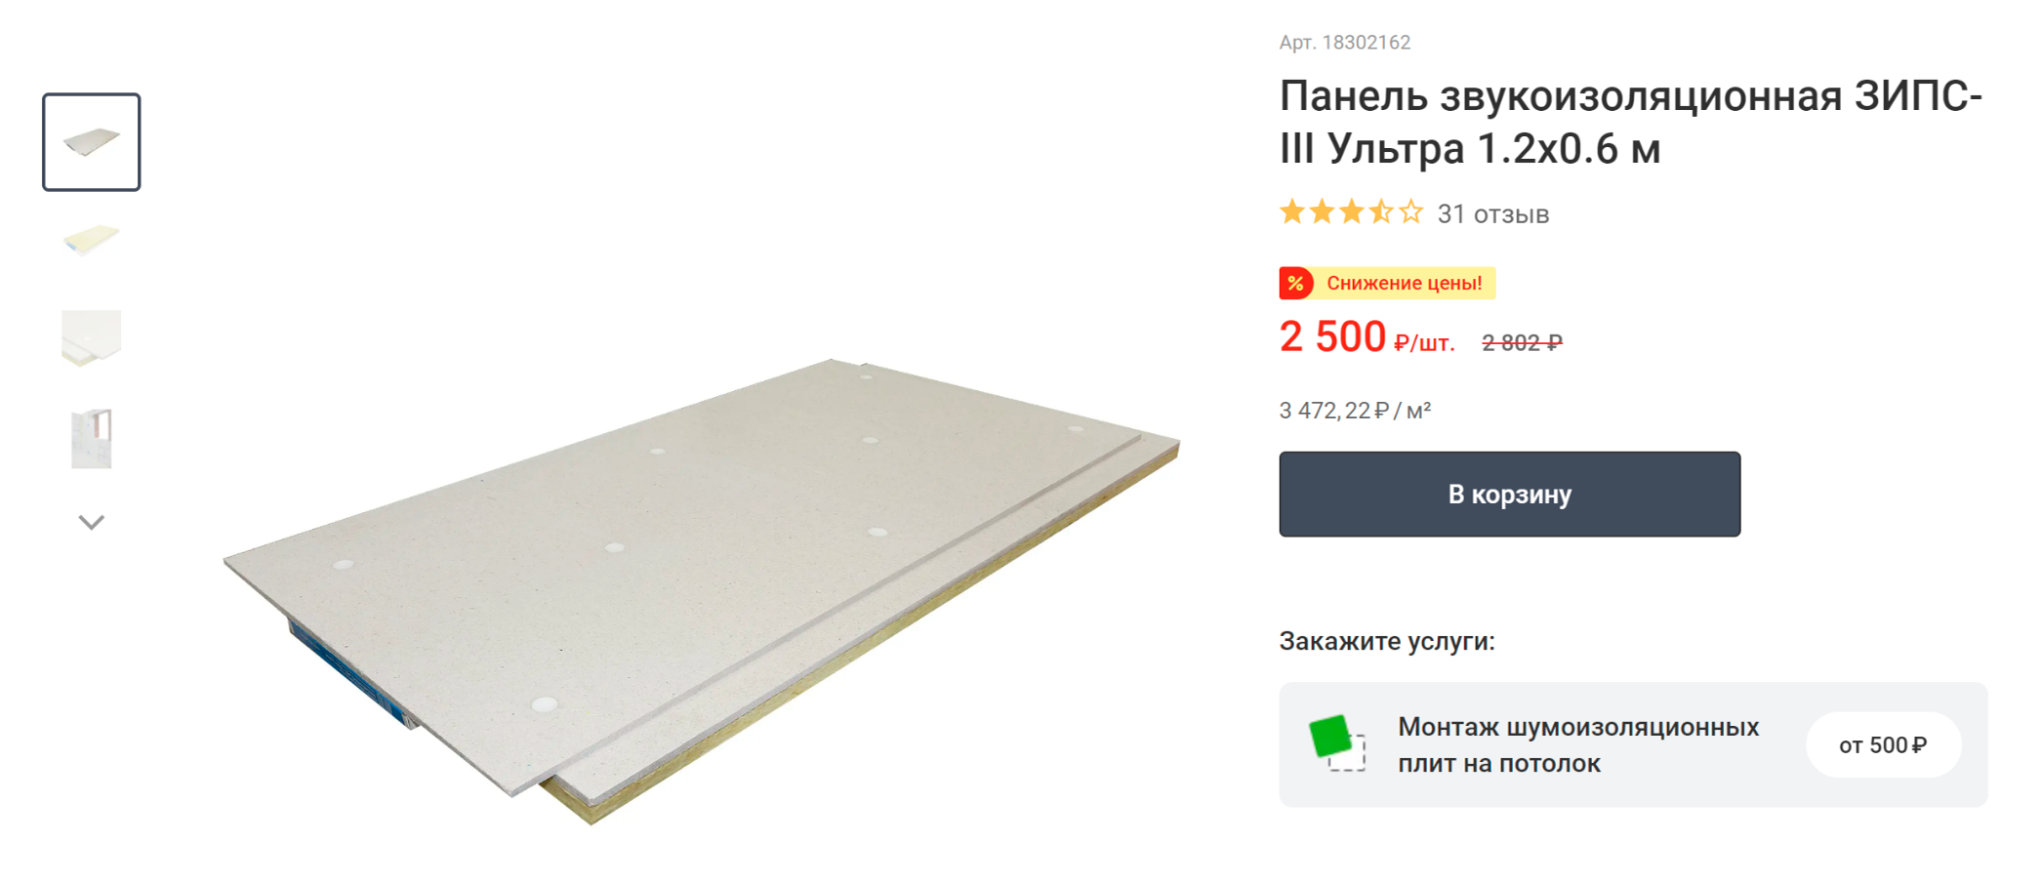 В продаже есть готовые плиты ЗИПС, около 3500 ₽ за 1 м². Не придется отдельно покупать гипсокартон и минвату. Источник: leroymerlin.ru